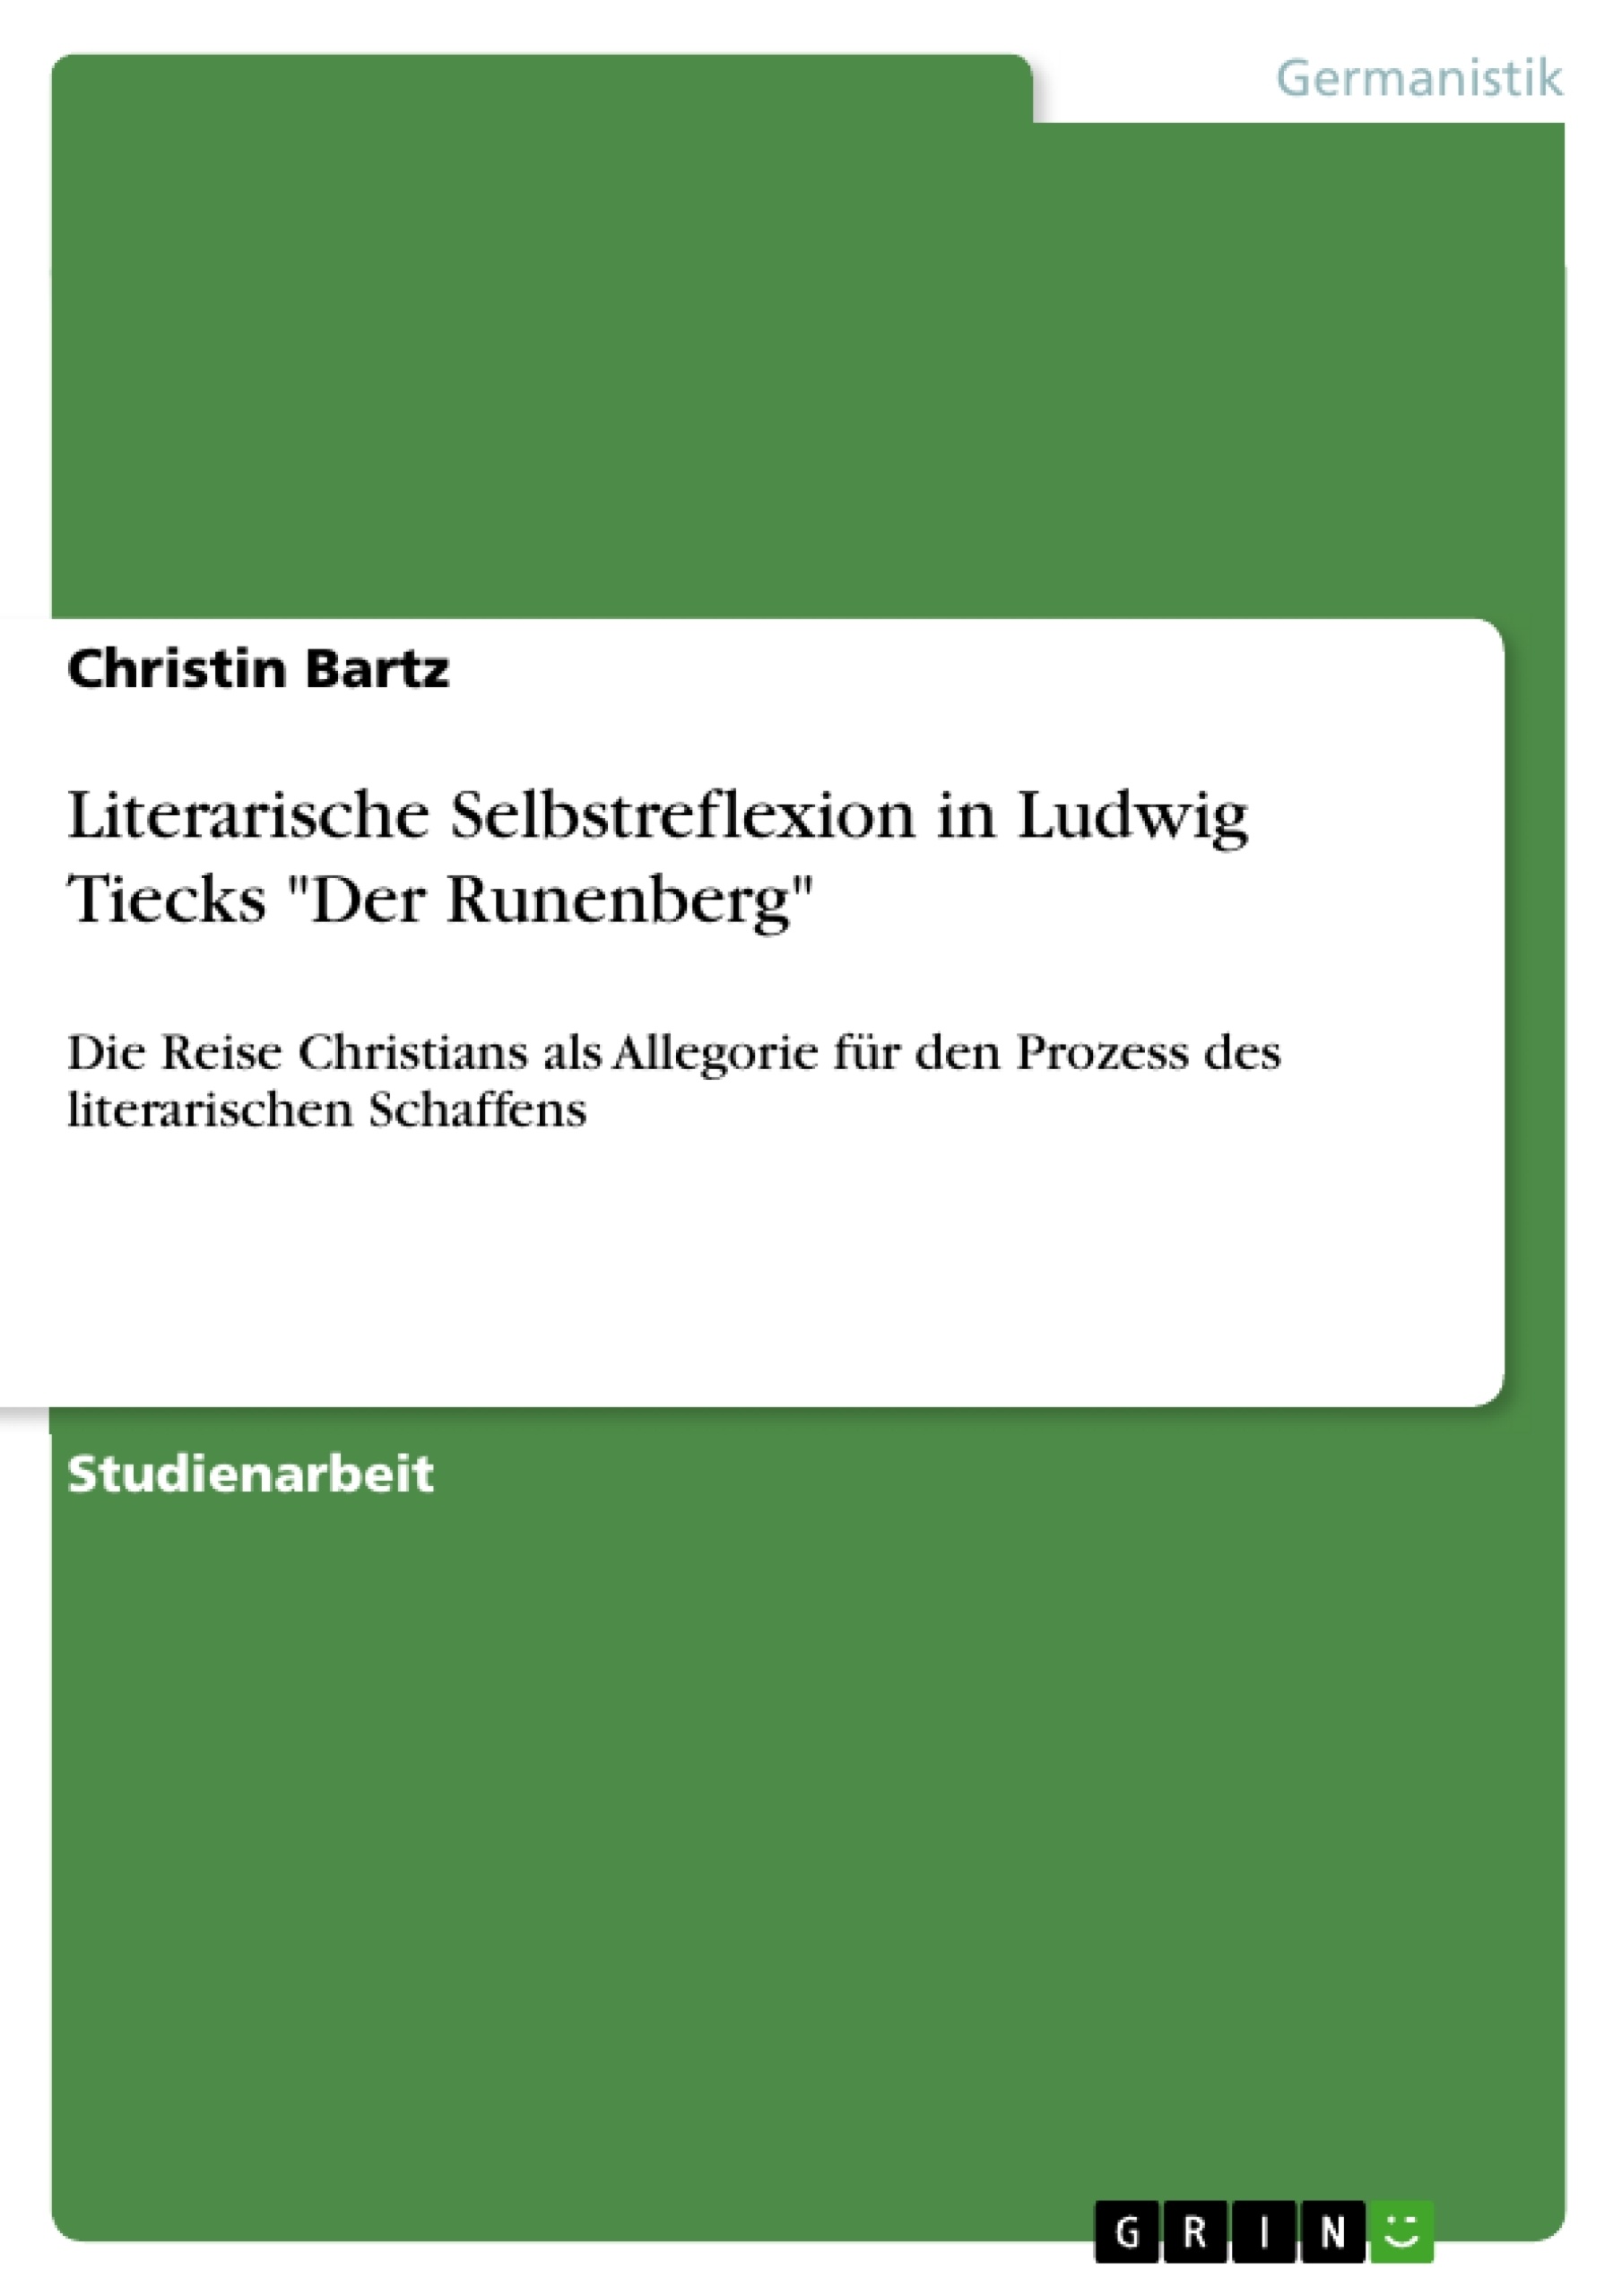 Title: Literarische Selbstreflexion in Ludwig Tiecks "Der Runenberg"